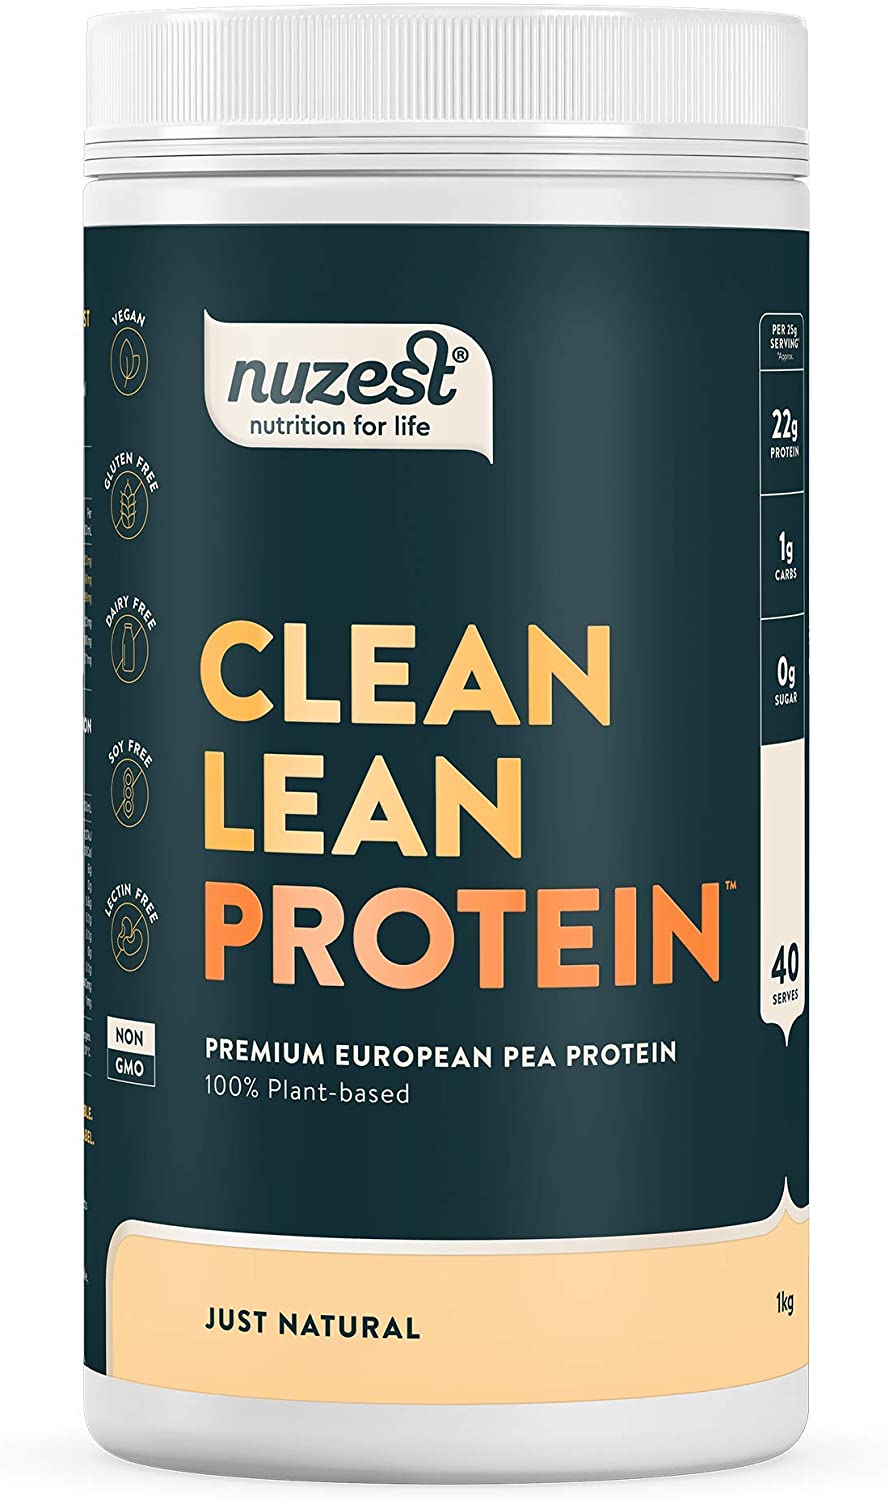 Nuzest Clean Lean Protein Premium Vegan Pea Protein Powder